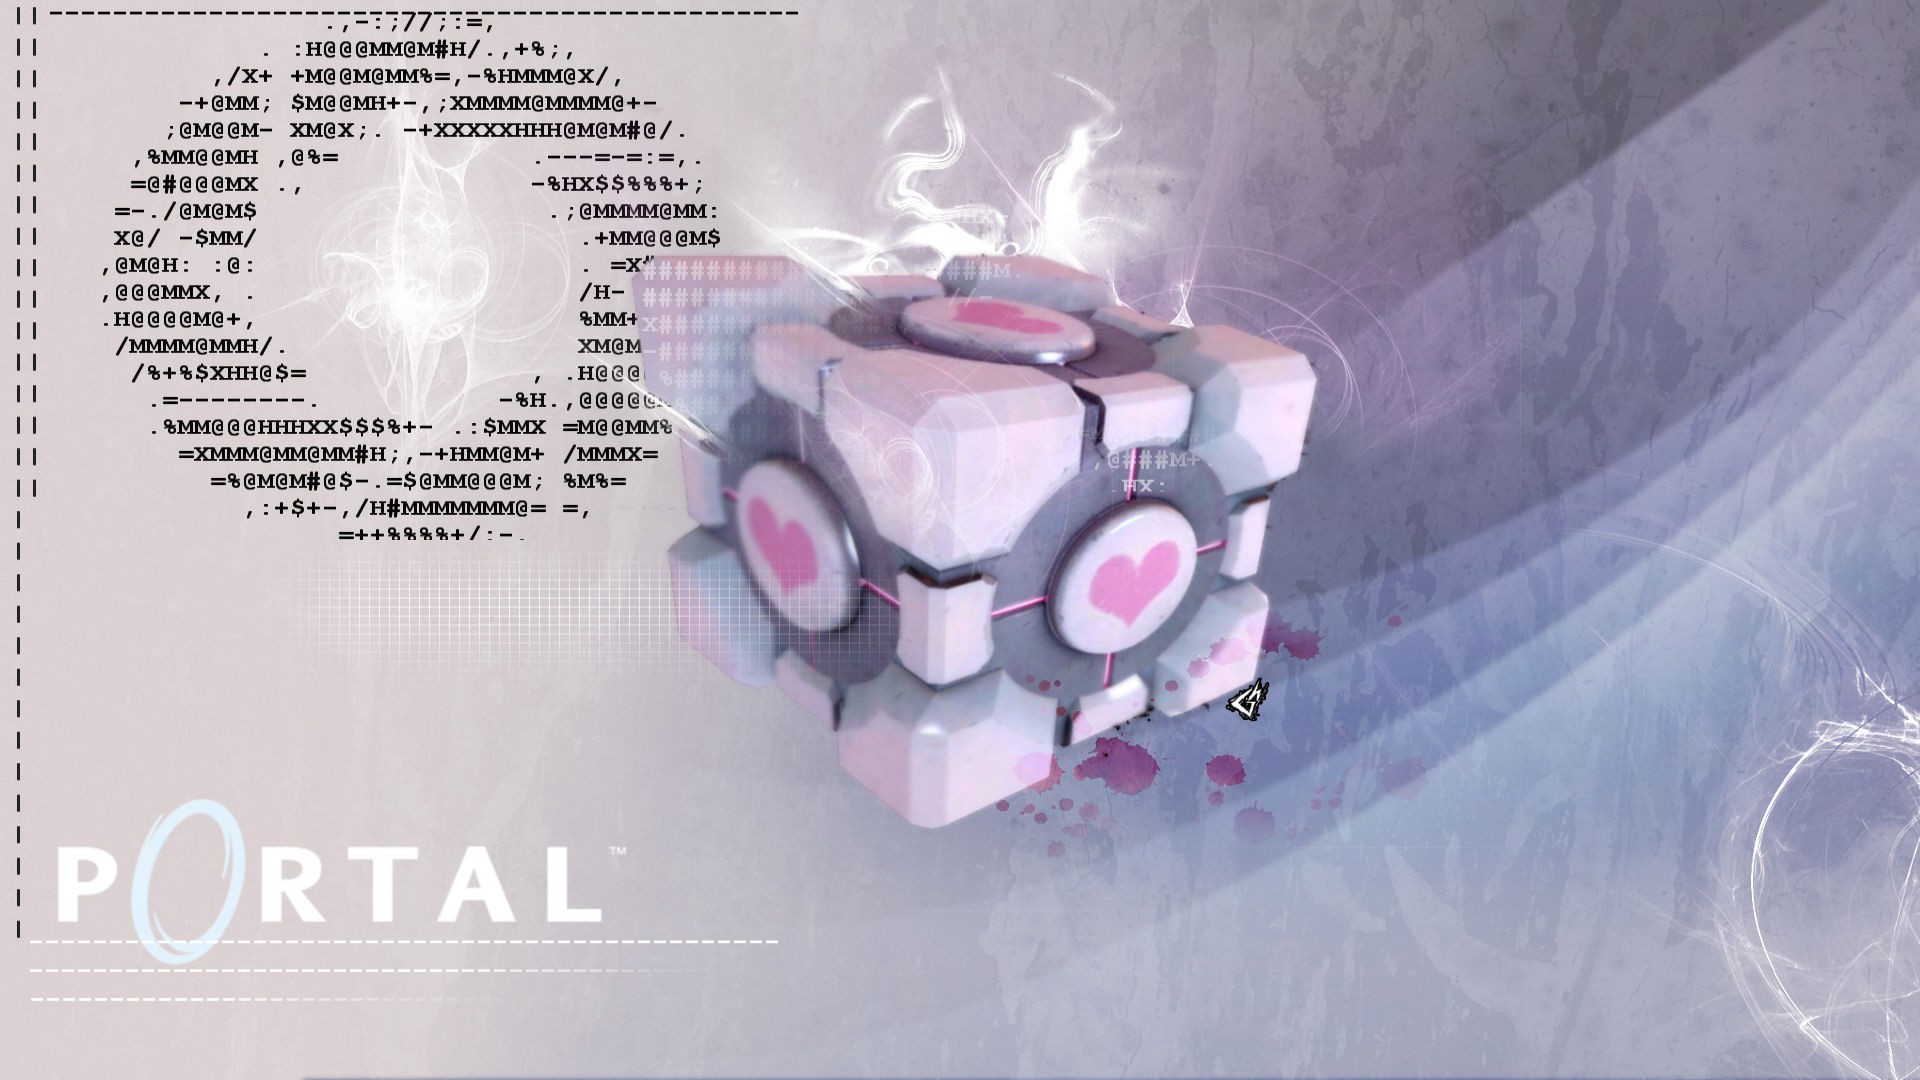 Portal, Video Games Wallpaper